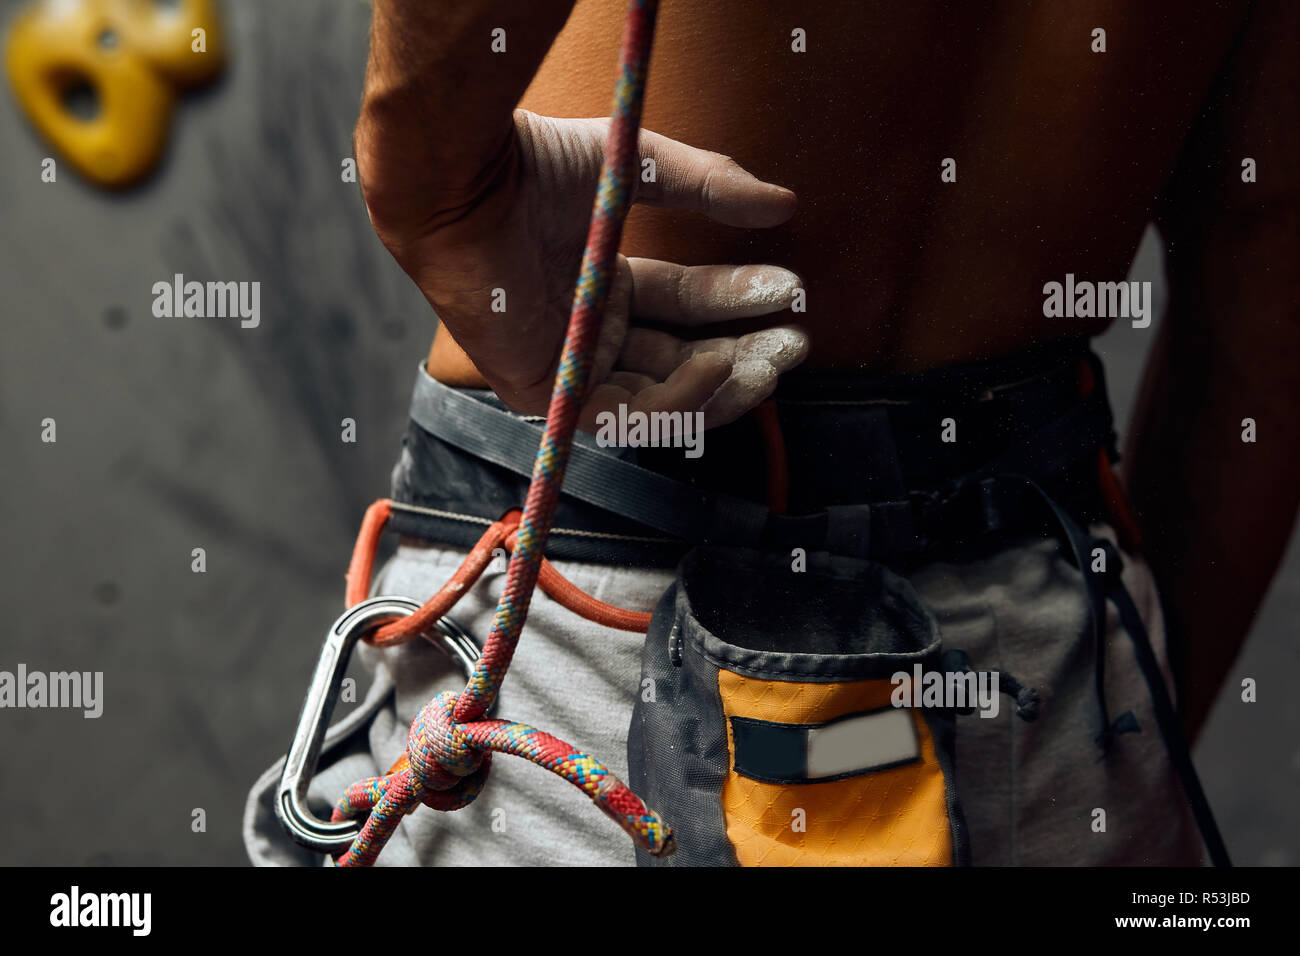 Kletterer s männliche Hände mit Ausrüstung während der Vorbereitung für Klettern, close-up. Stockfoto